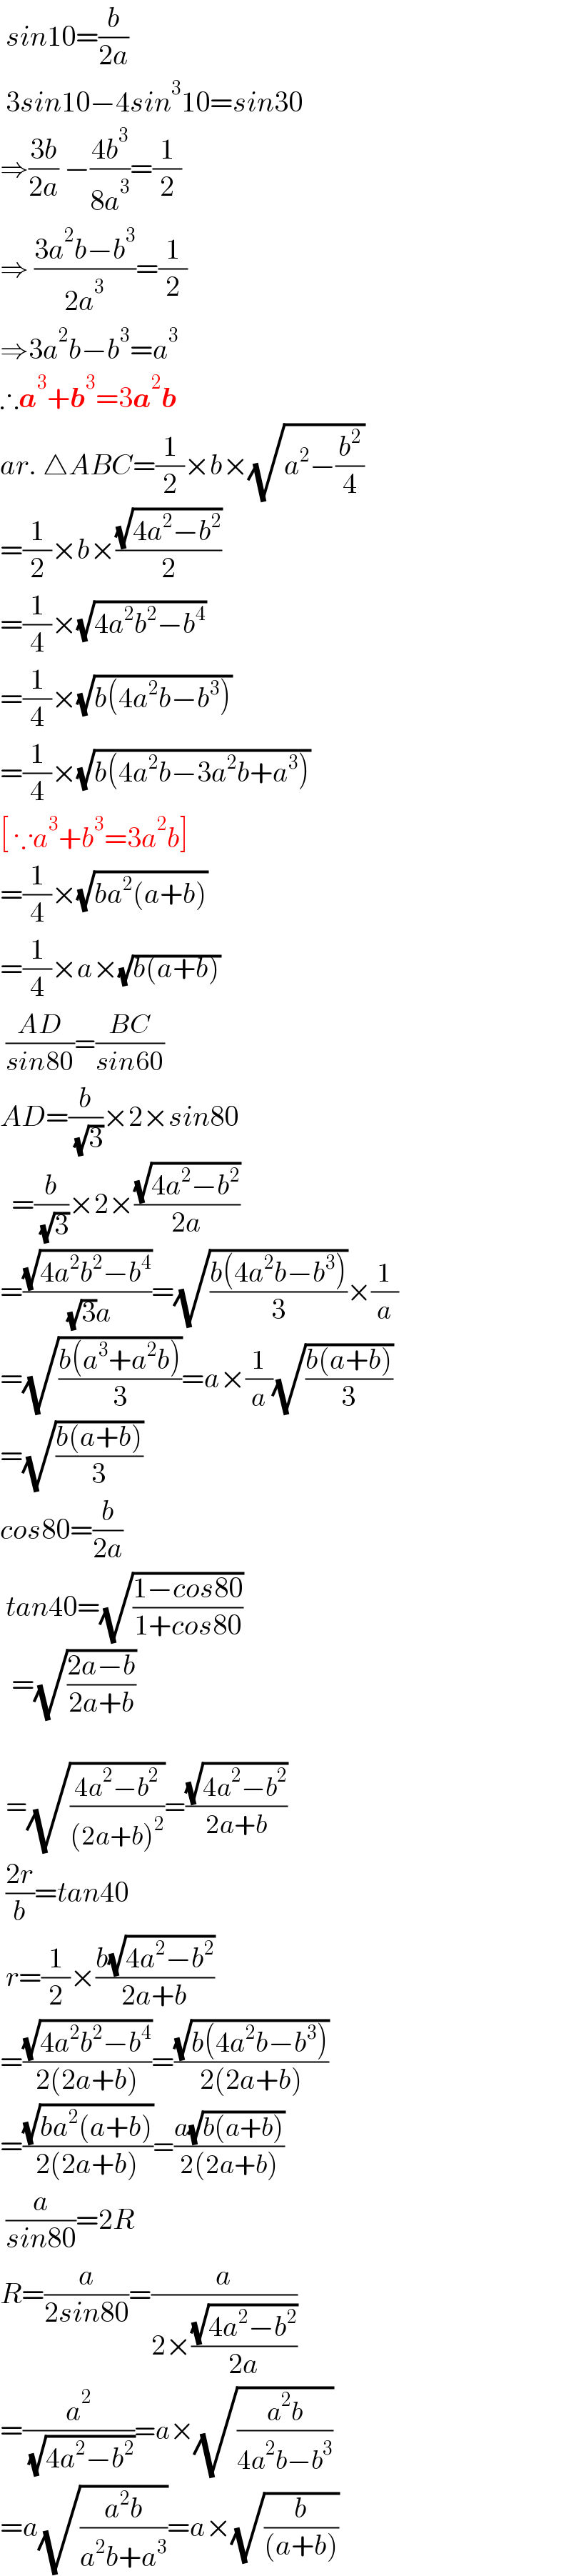  sin10=(b/(2a))   3sin10−4sin^3 10=sin30  ⇒((3b)/(2a)) −((4b^3 )/(8a^3 ))=(1/2)  ⇒ ((3a^2 b−b^3 )/(2a^3 ))=(1/2)  ⇒3a^2 b−b^3 =a^3   ∴a^3 +b^3 =3a^2 b  ar. △ABC=(1/2)×b×(√(a^2 −(b^2 /4)))  =(1/2)×b×((√(4a^2 −b^2 ))/2)  =(1/4)×(√(4a^2 b^2 −b^4 ))  =(1/4)×(√(b(4a^2 b−b^3 )))  =(1/4)×(√(b(4a^2 b−3a^2 b+a^3 )))  [ ∵a^3 +b^3 =3a^2 b]  =(1/4)×(√(ba^2 (a+b)))  =(1/4)×a×(√(b(a+b)))   ((AD)/(sin80))=((BC)/(sin60))  AD=(b/( (√3)))×2×sin80    =(b/( (√3)))×2×((√(4a^2 −b^2 ))/(2a))  =((√(4a^2 b^2 −b^4 ))/( (√3)a))=(√((b(4a^2 b−b^3 ))/3))×(1/a)  =(√((b(a^3 +a^2 b))/3))=a×(1/a)(√((b(a+b))/3))  =(√((b(a+b))/3))  cos80=(b/(2a))   tan40=(√((1−cos80)/(1+cos80)))    =(√((2a−b)/(2a+b)))      =(√((4a^2 −b^2 )/((2a+b)^2 )))=((√(4a^2 −b^2 ))/(2a+b))   ((2r)/b)=tan40   r=(1/2)×((b(√(4a^2 −b^2 )))/(2a+b))  =((√(4a^2 b^2 −b^4 ))/(2(2a+b)))=((√(b(4a^2 b−b^3 )))/(2(2a+b)))  =((√(ba^2 (a+b)))/(2(2a+b)))=((a(√(b(a+b))))/(2(2a+b)))   (a/(sin80))=2R  R=(a/(2sin80))=(a/(2×((√(4a^2 −b^2 ))/(2a))))  =(a^2 /( (√(4a^2 −b^2 ))))=a×(√((a^2 b)/(4a^2 b−b^3 )))  =a(√((a^2 b)/(a^2 b+a^3 )))=a×(√(b/((a+b))))  